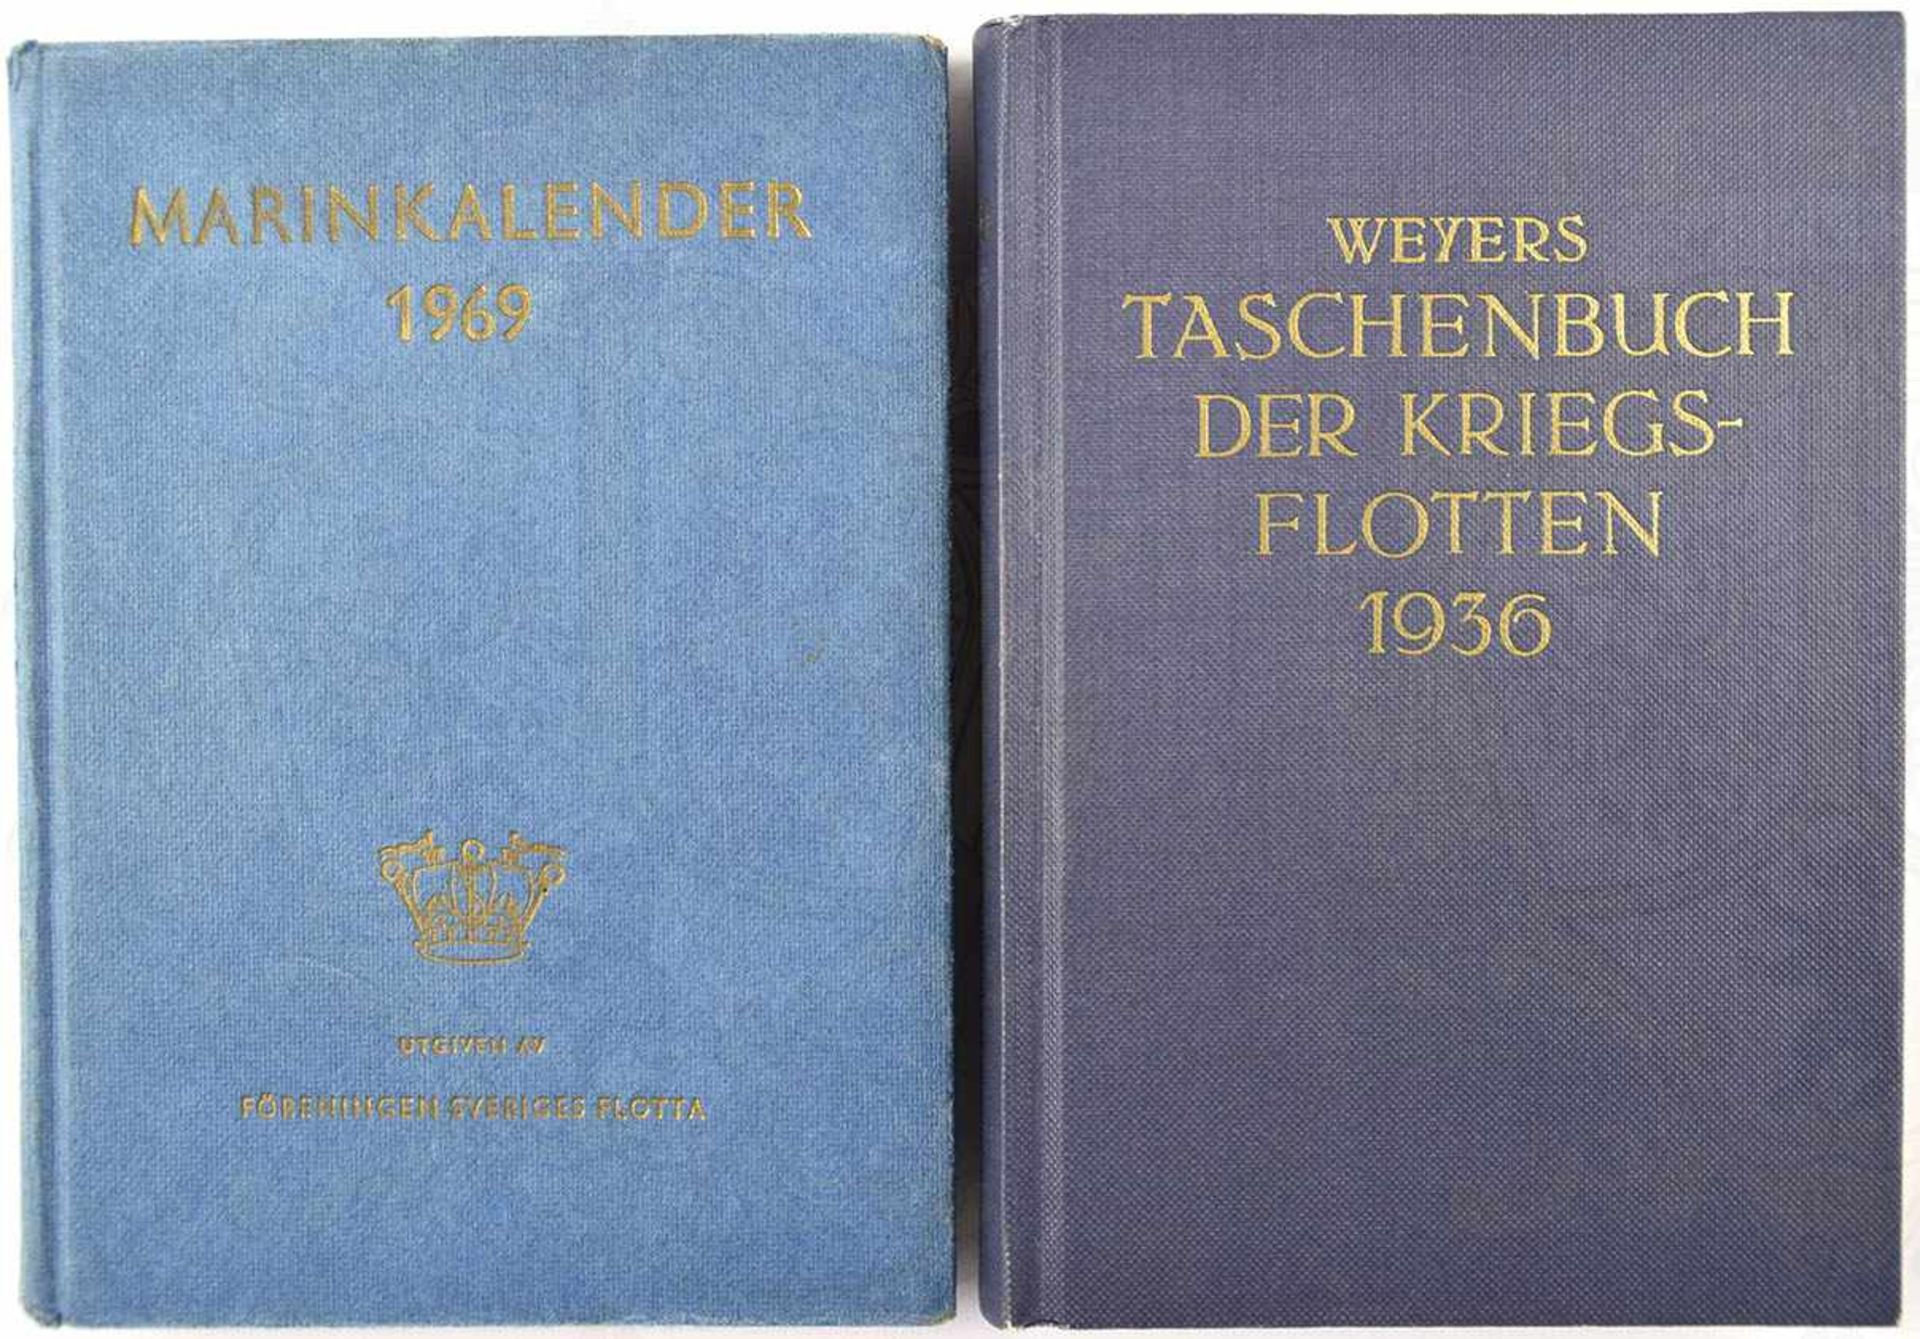 2 FLOTTEN-TASCHENBÜCHER: „Weyers Taschenbuch der Kriegsflotten 1936“, Nachdruck (1996) des Originals